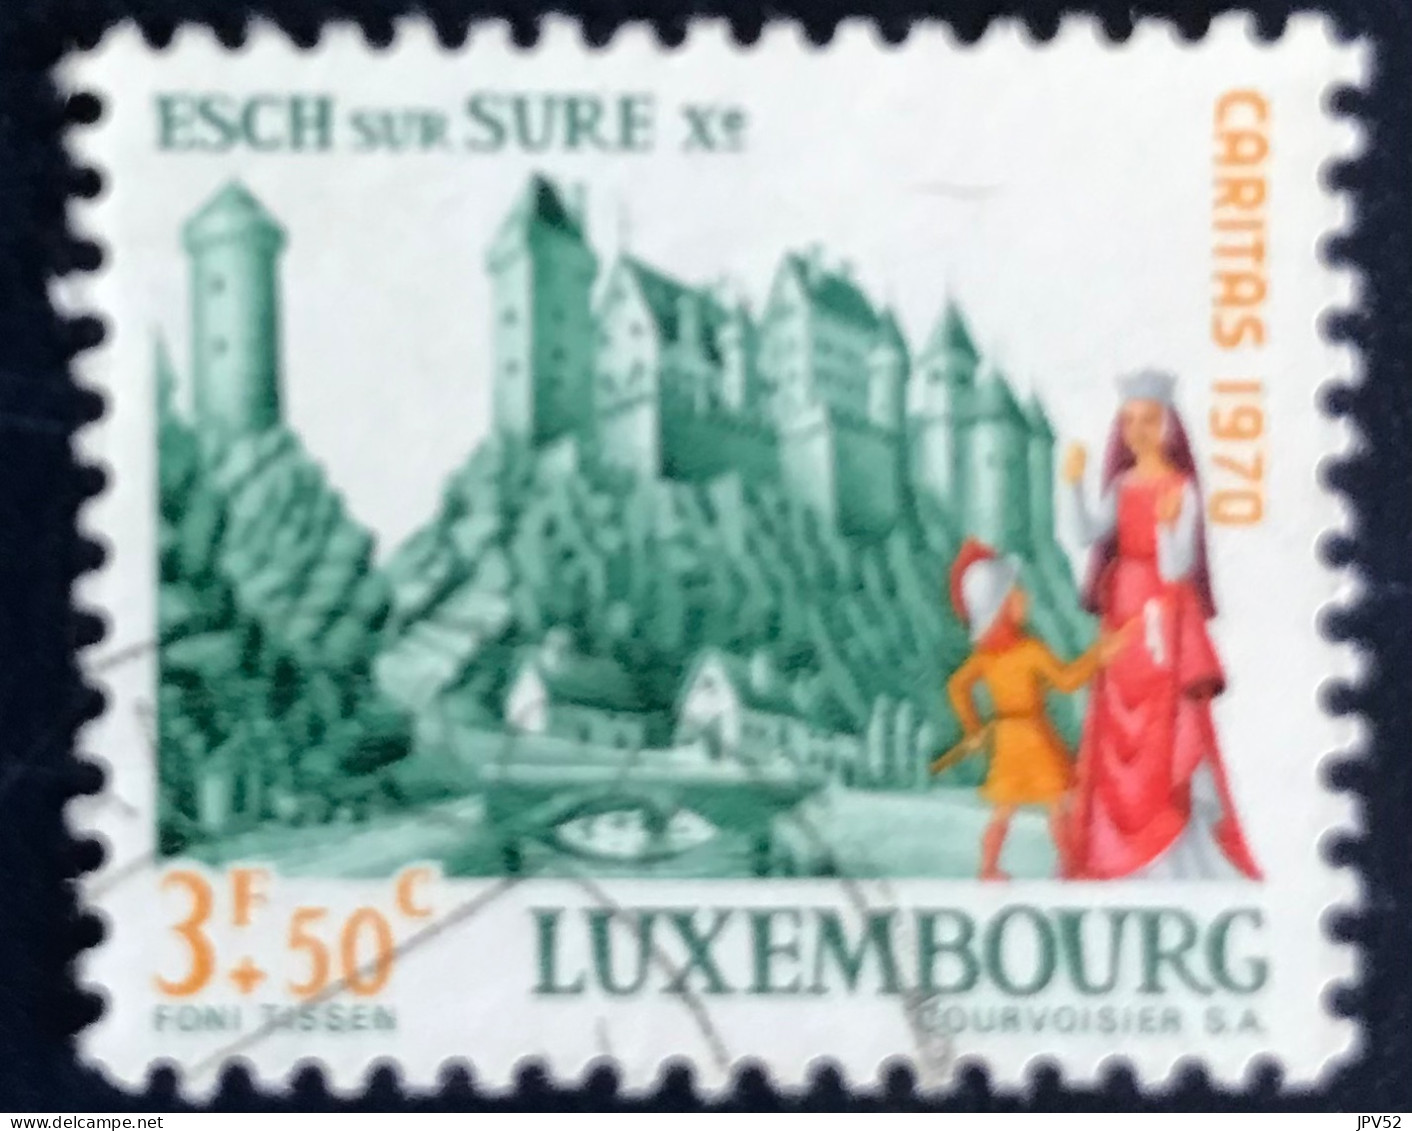 Luxembourg - Luxemburg - C18/34 - 1970 - (°)used - Michel 817 - Kasteel Esch-sur-Süre - Gebraucht